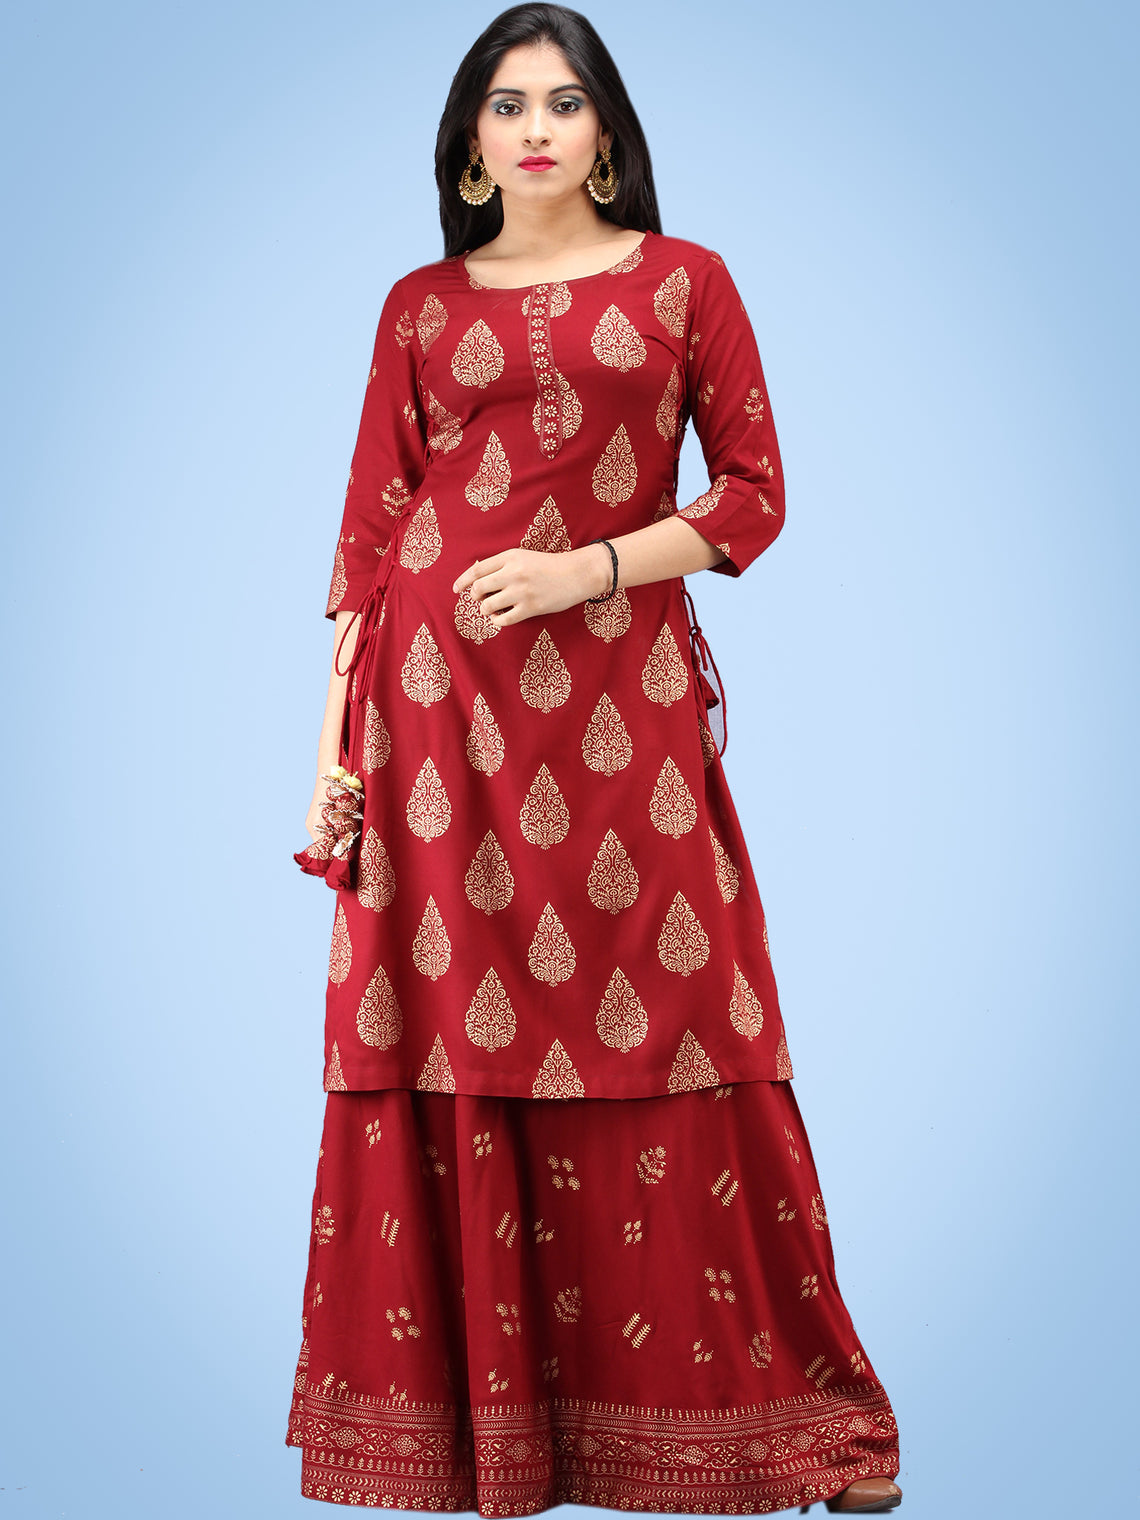 Aalia - Rustic Red Gold Block Print Kurta & Skirt Dress With Tassels ...